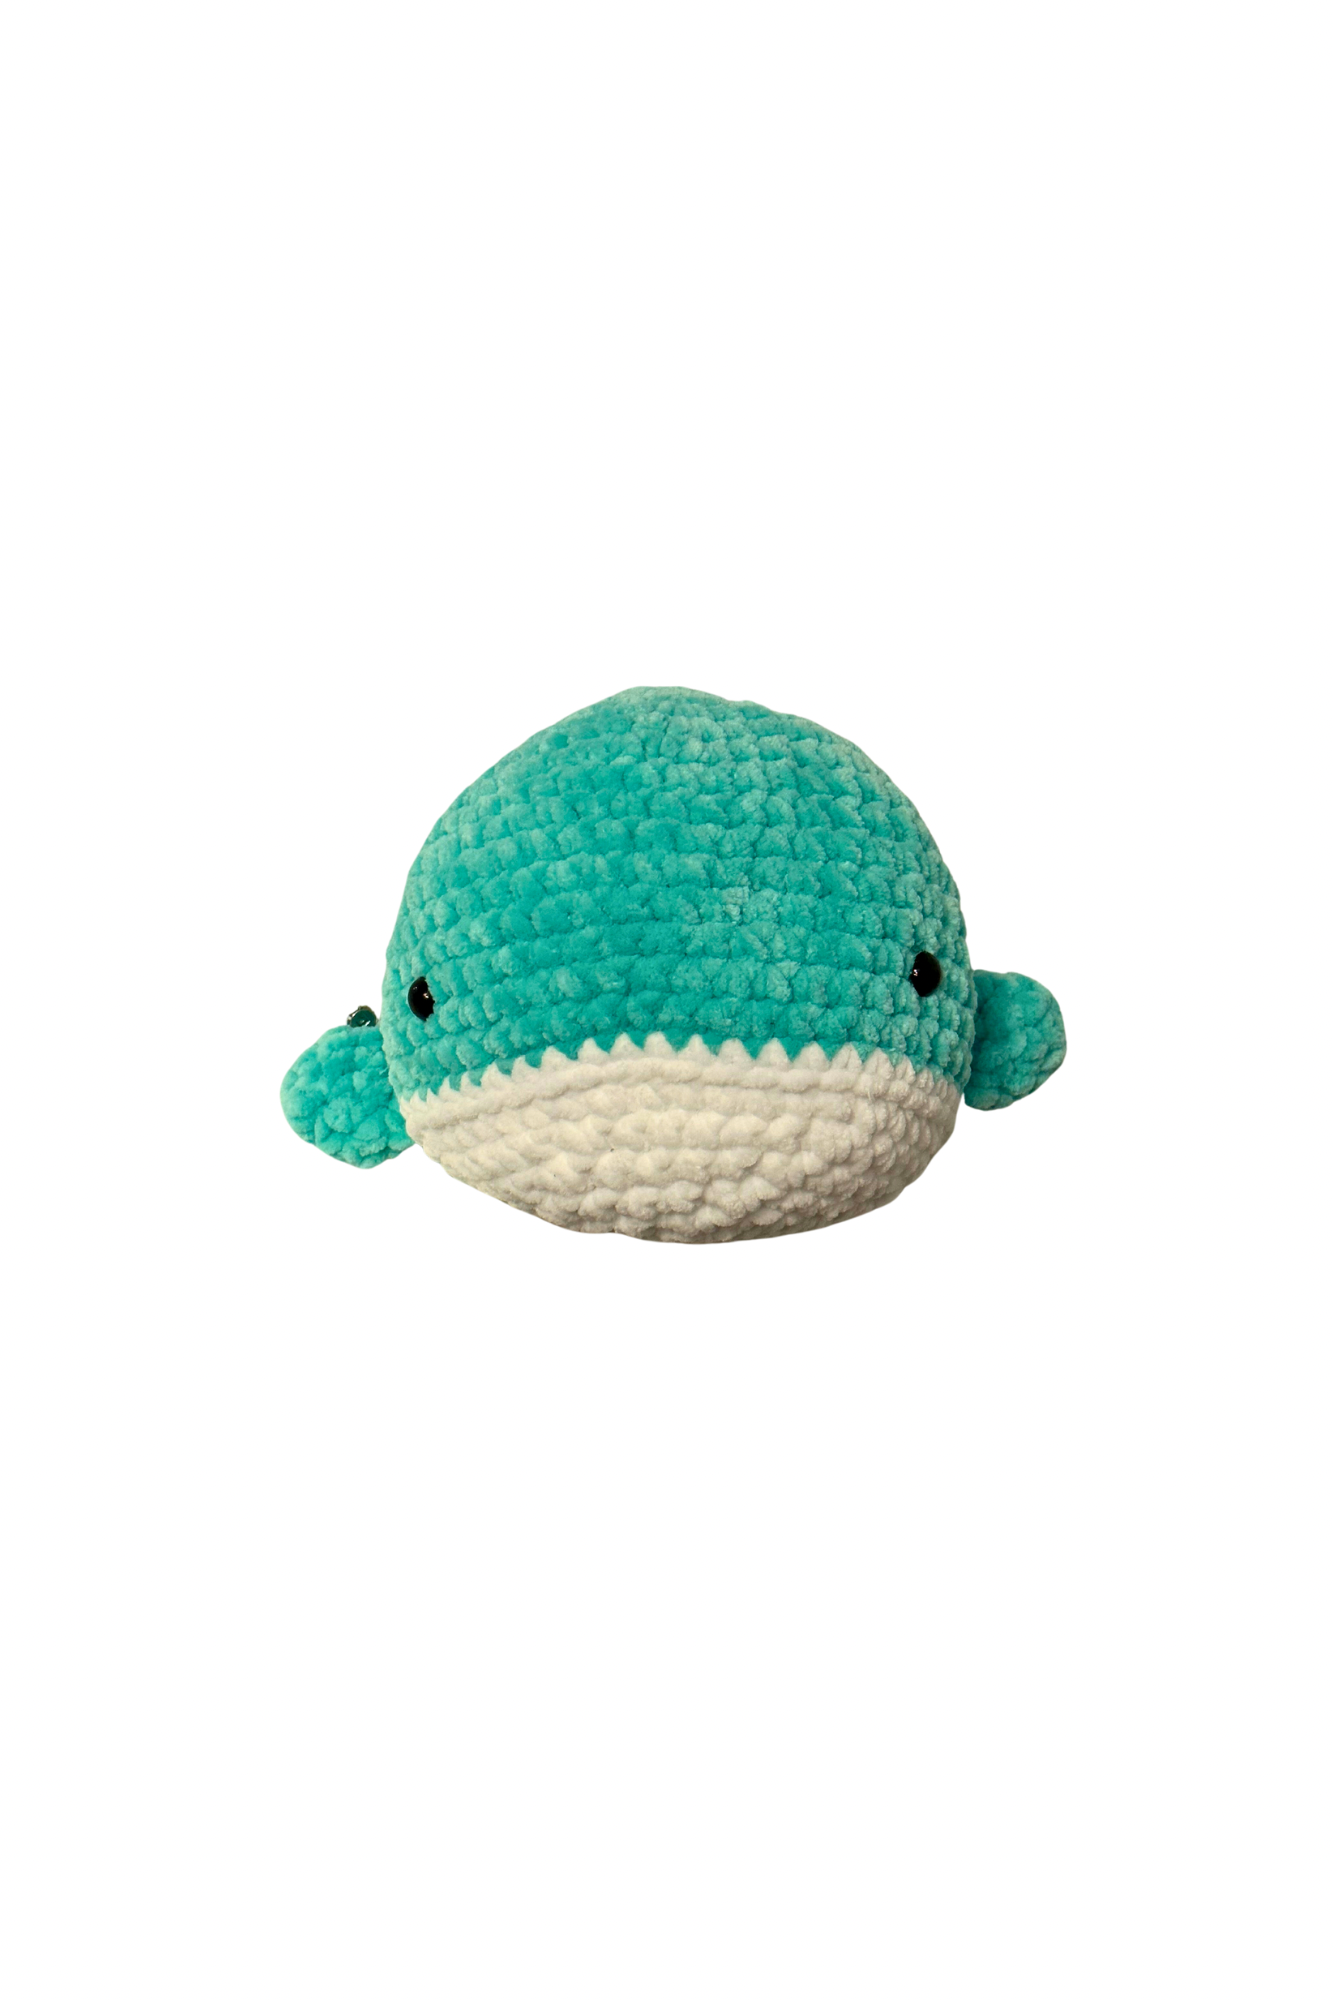 Whale - Crocheted Doll | Arlene F.